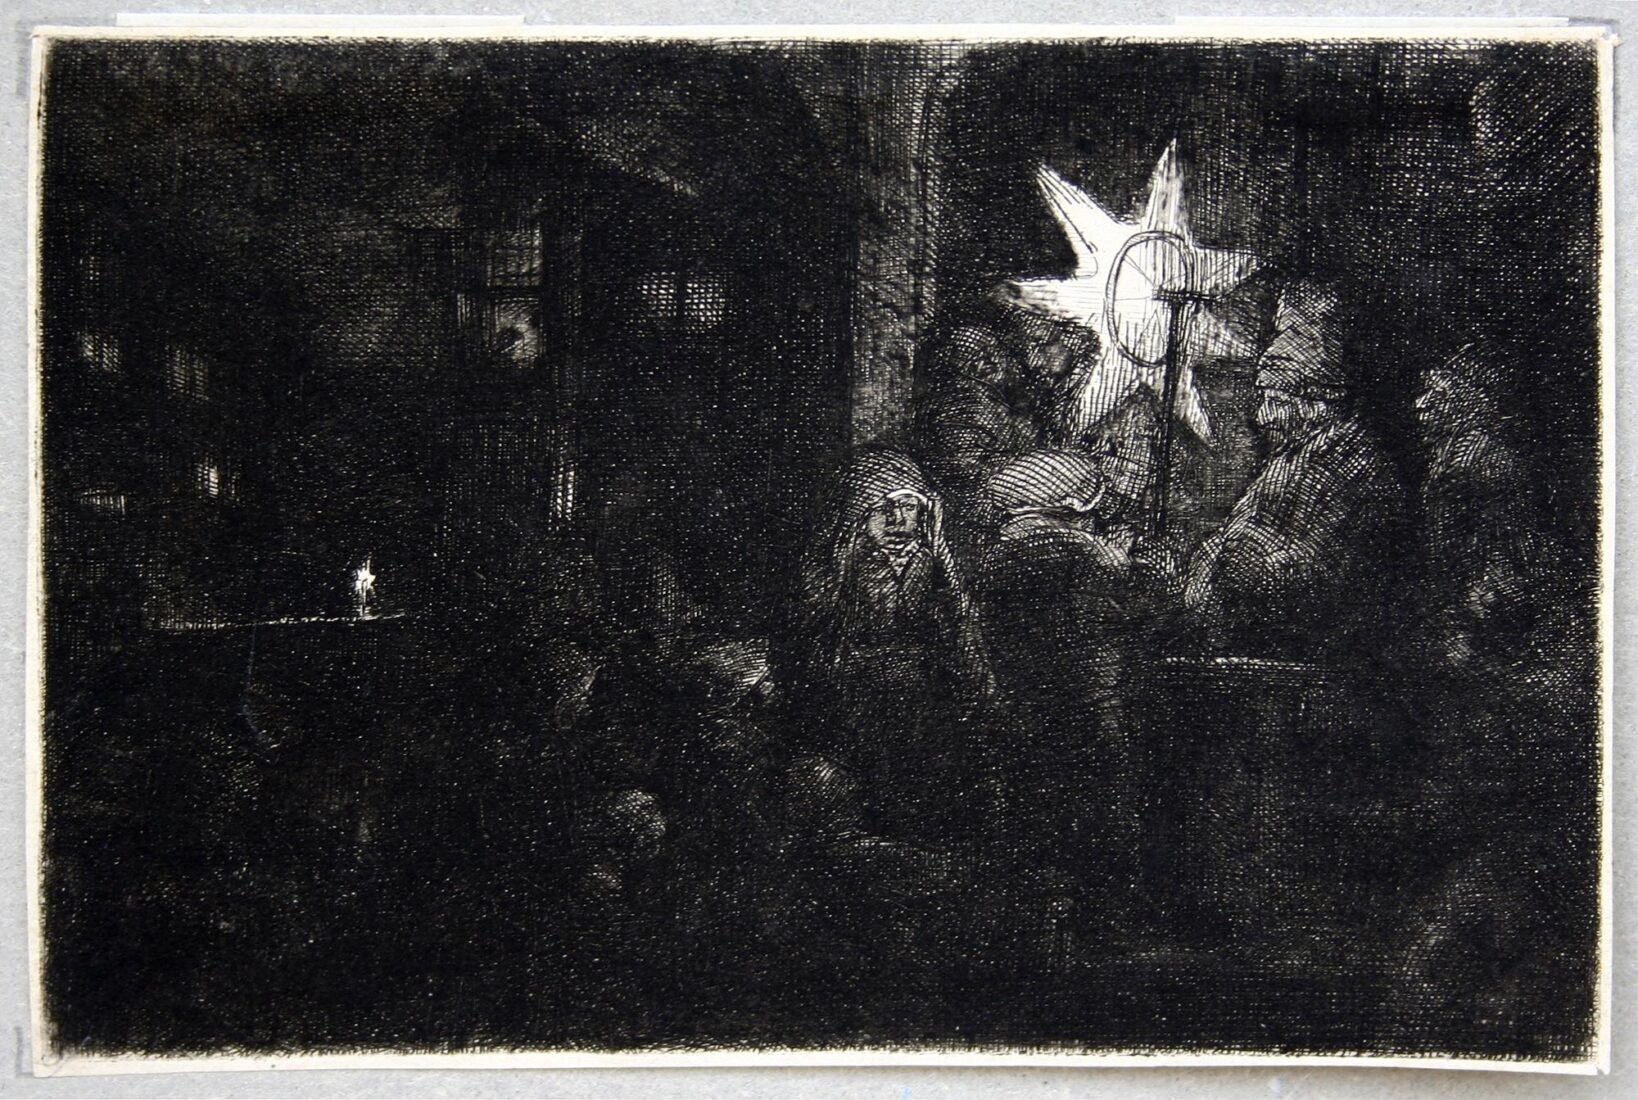 Το άστρο των Μάγων. Νυχτερινή σκηνή - Rembrandt Harmensz. van Rijn